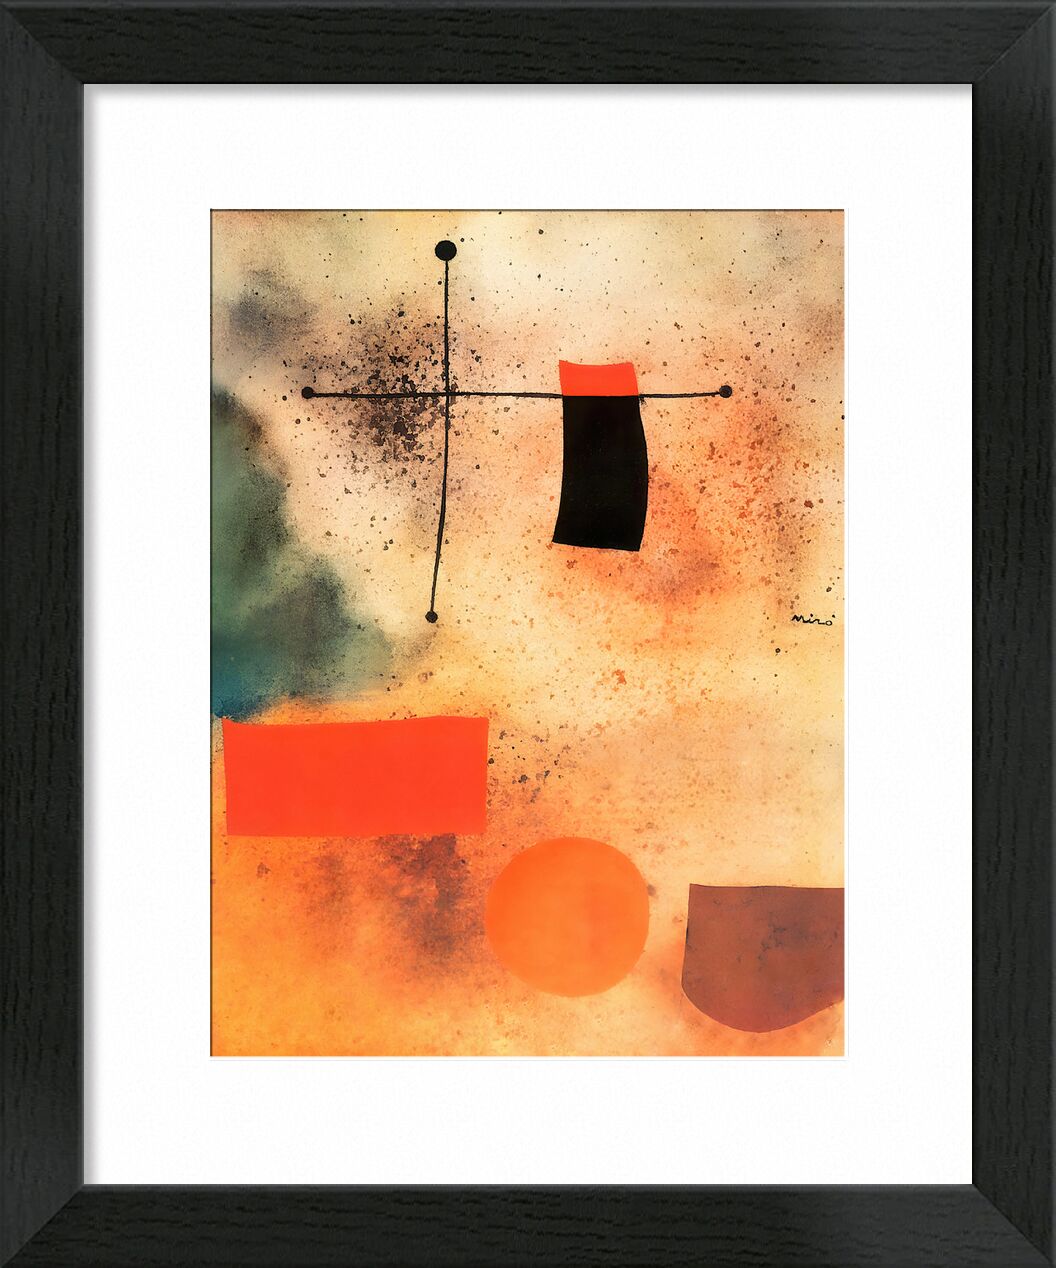 Abstract, c.1935 von Bildende Kunst, Prodi Art, Joan Miró, abstrakt, Zeichnung, Kreuz, Strand